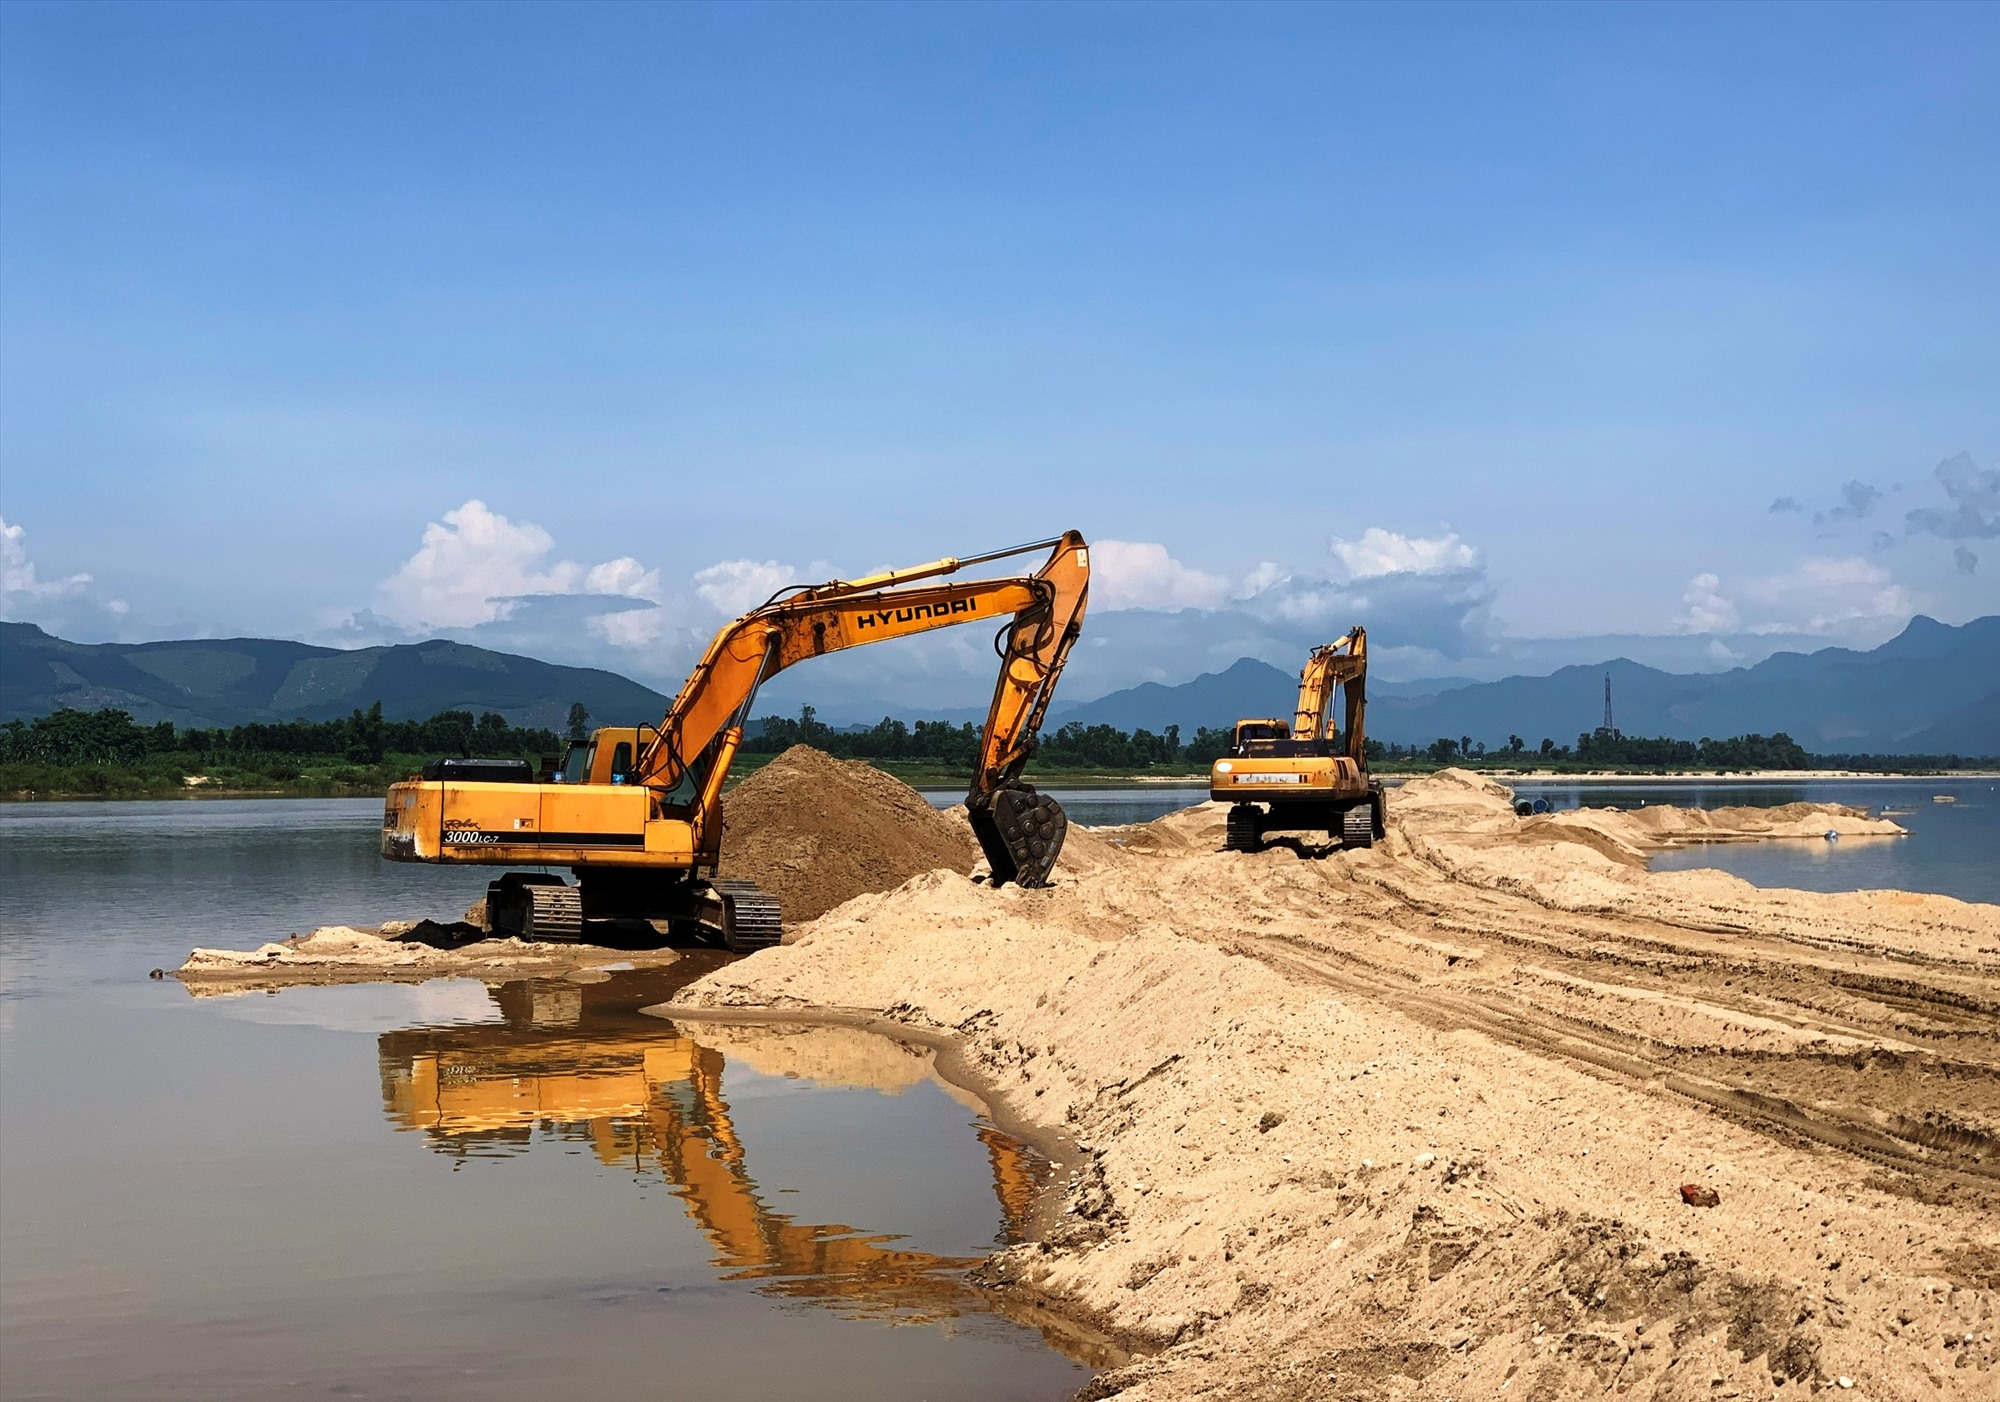 Các doanh nghiệp được cấp phép khai thác mỏ cát ở Quảng Ngãi, được khai thác cát bất kỳ thời gian nào trong năm với điều kiện phải đảm bảo an toàn trong quá trình khai thác. Ảnh: Ngọc Viên